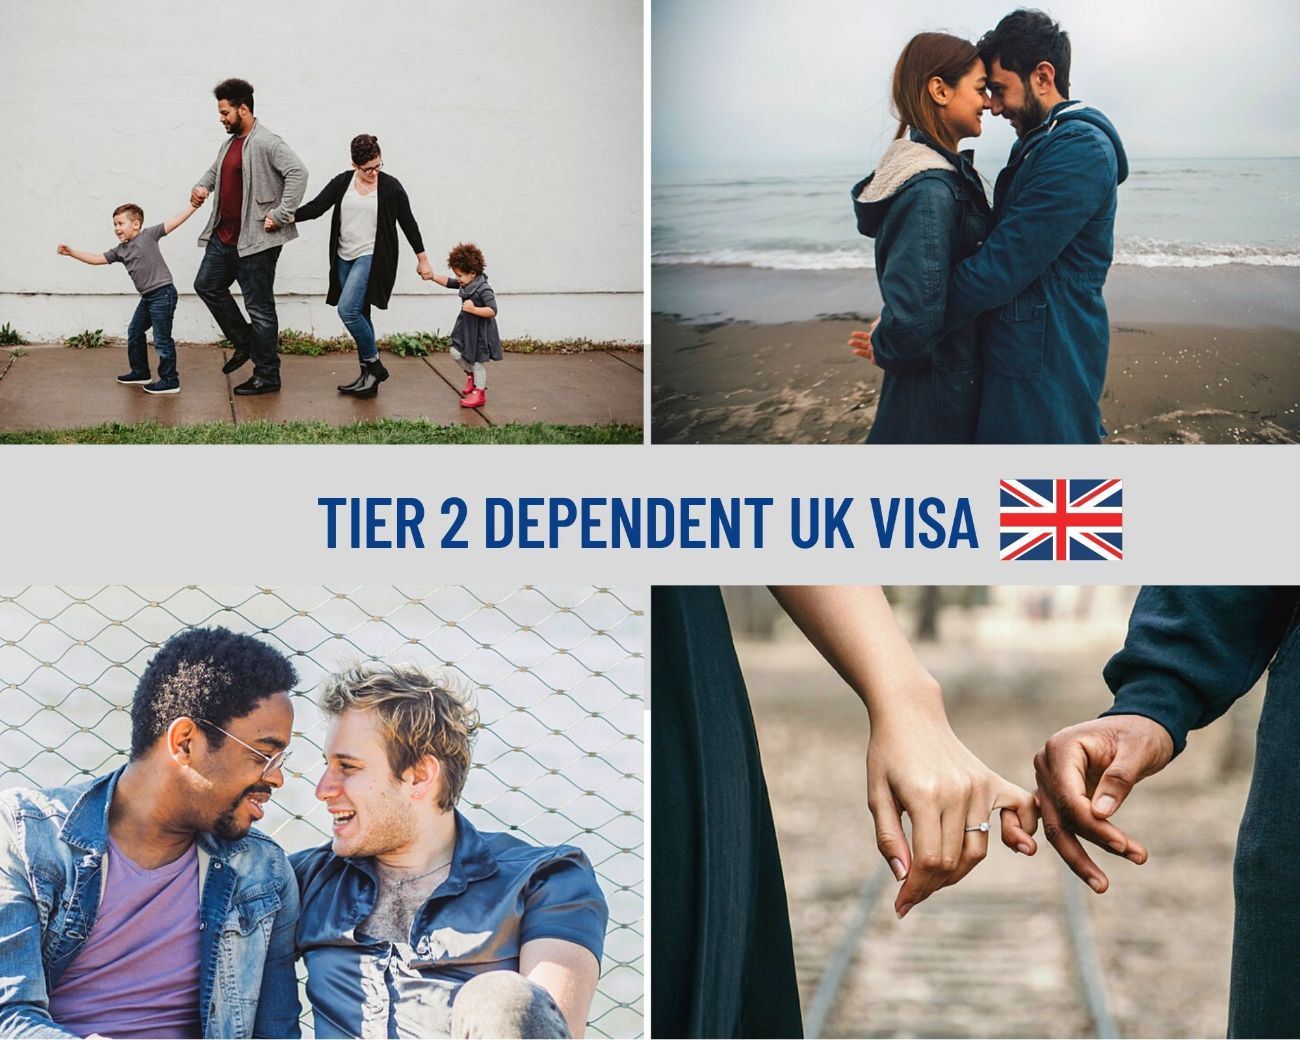 Tier 2 Dependent UK Visa